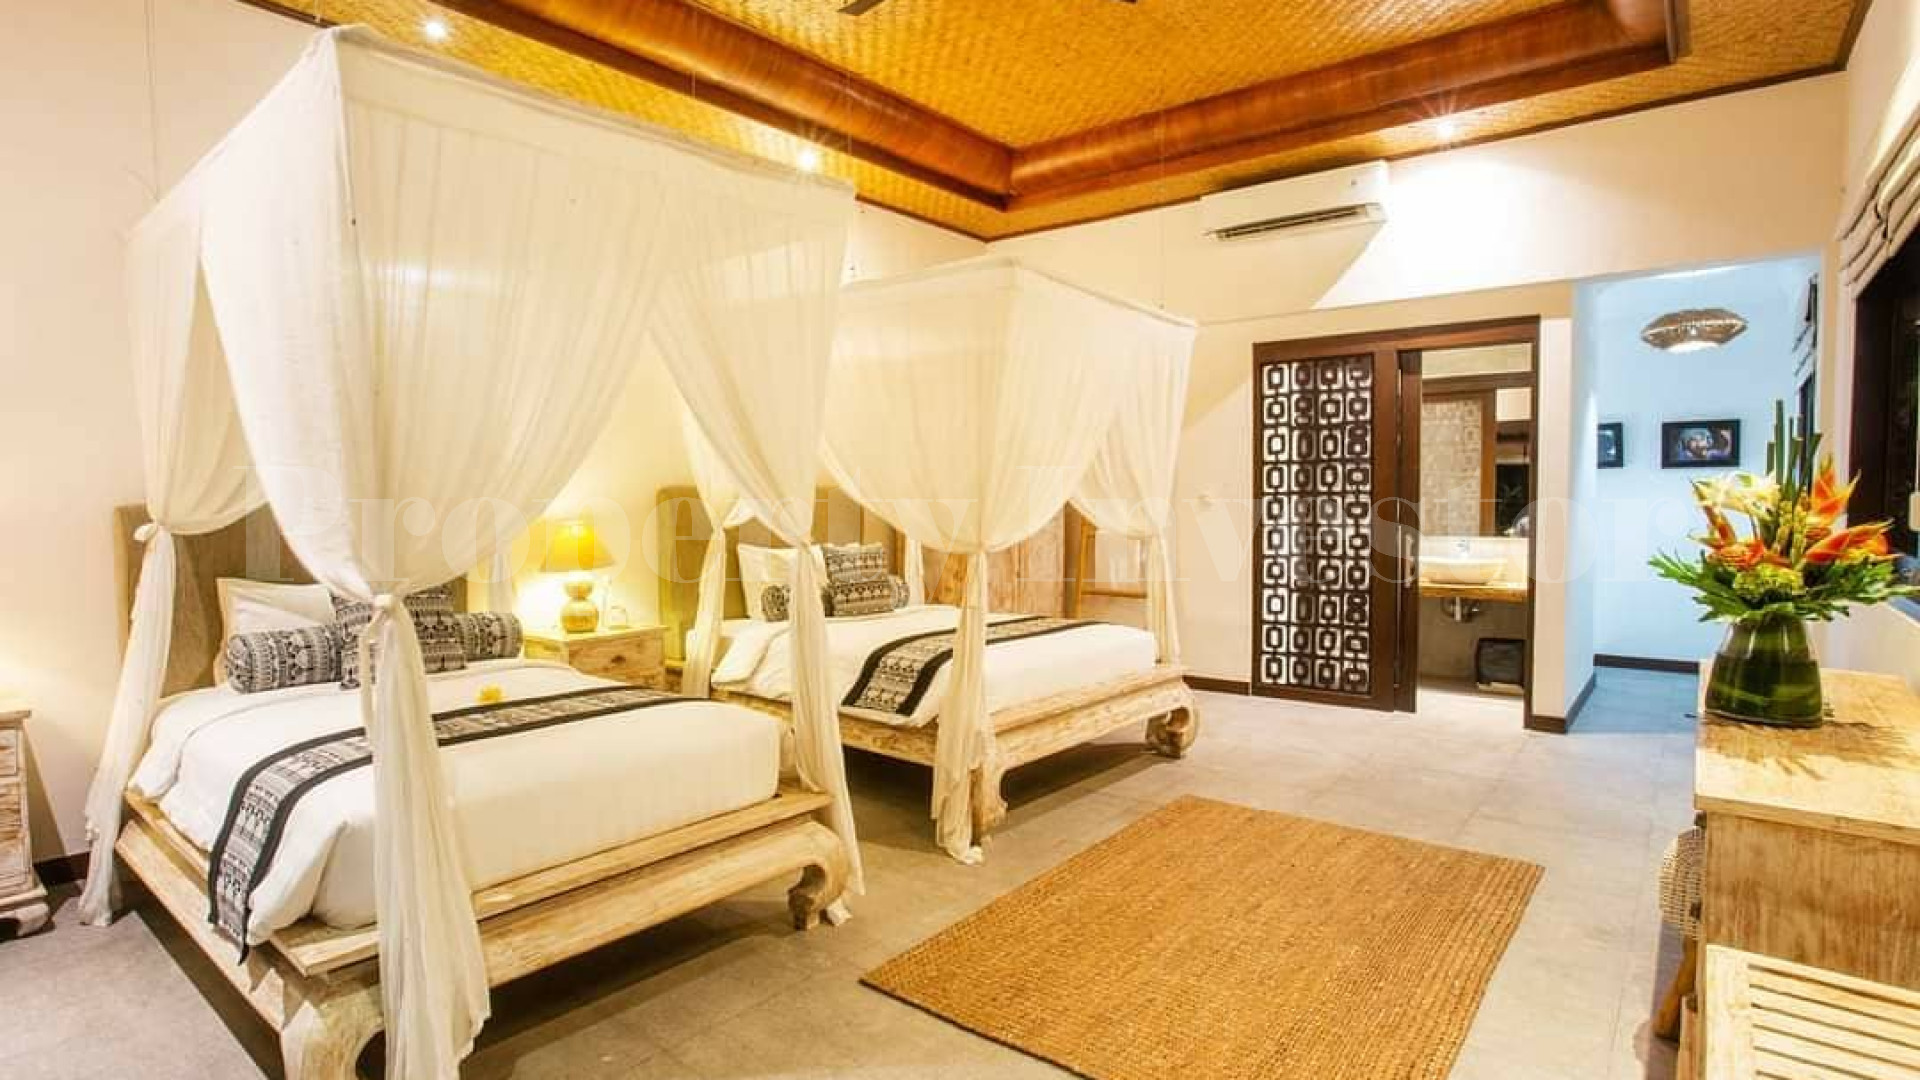 Просторная современная вилла в балийском стиле на 7 спален с лицензией отеля в Чемаги, Бали